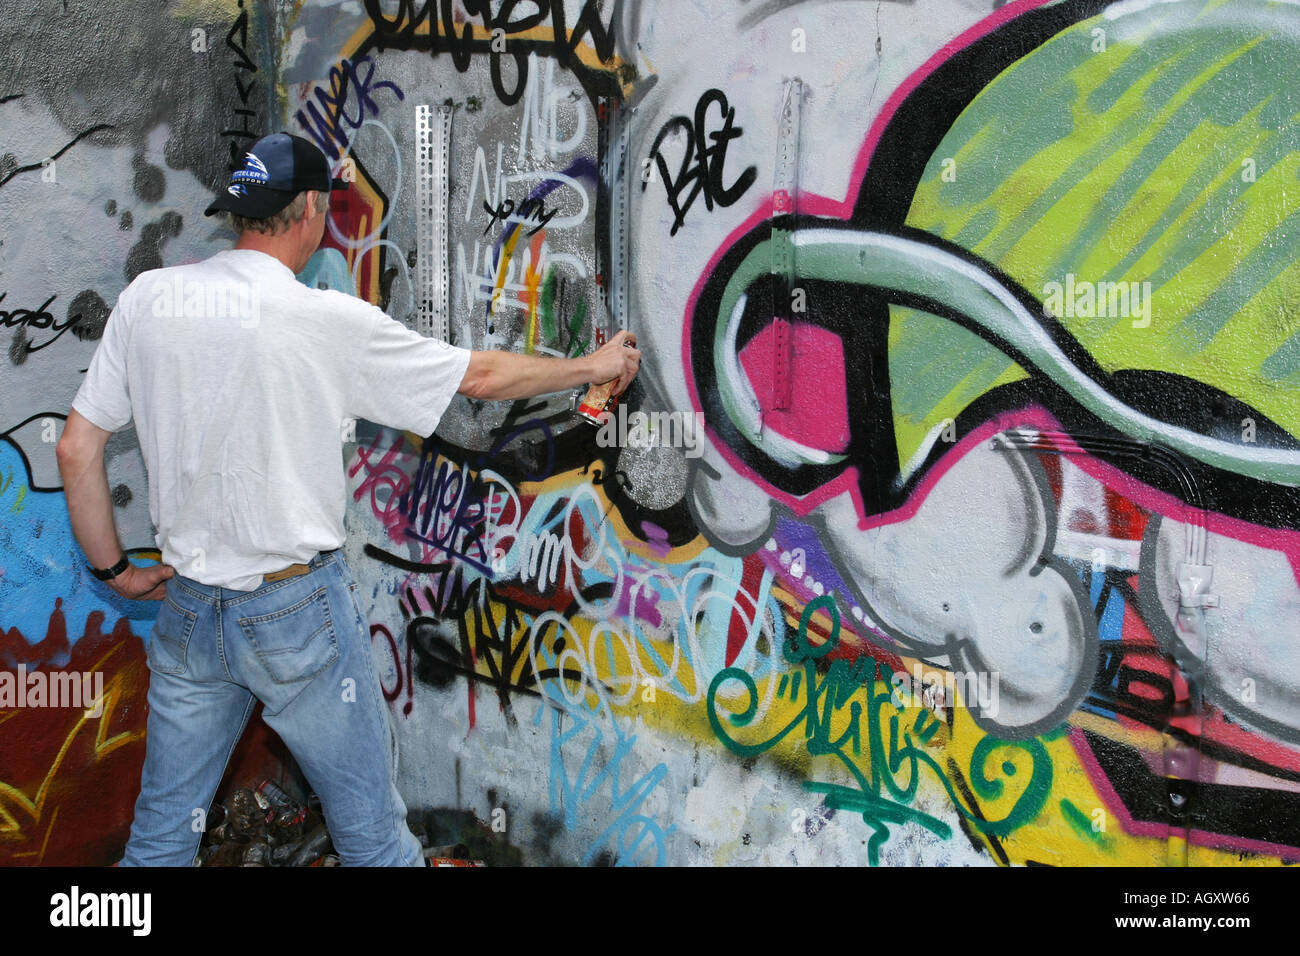 Man spraying graffiti on a wall Stock Photo